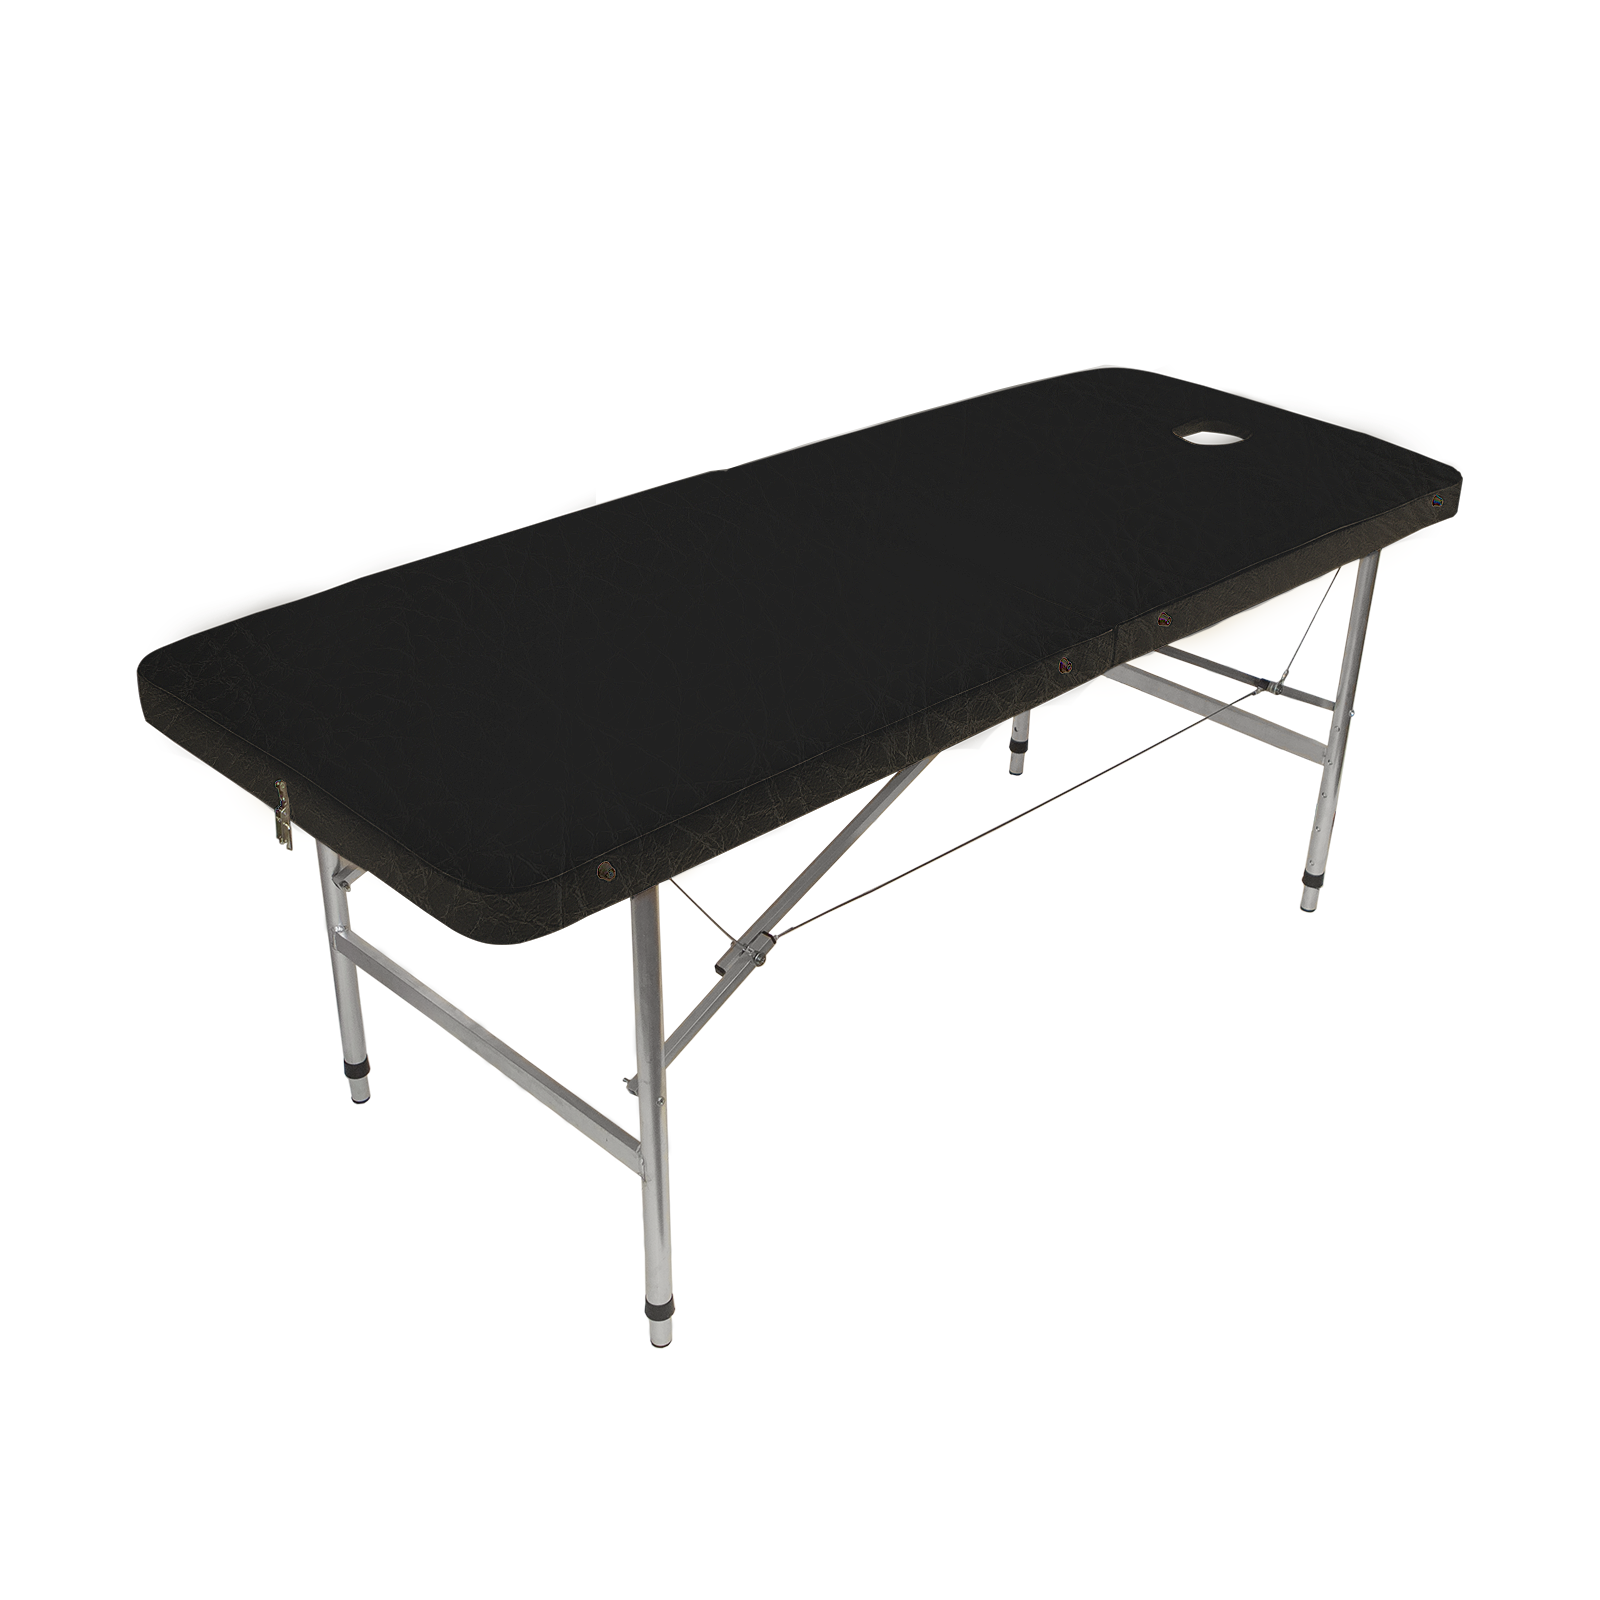 Массажный стол Your Stol складной с регулировкой от 70 до 87см XL, 190х70 см, черный